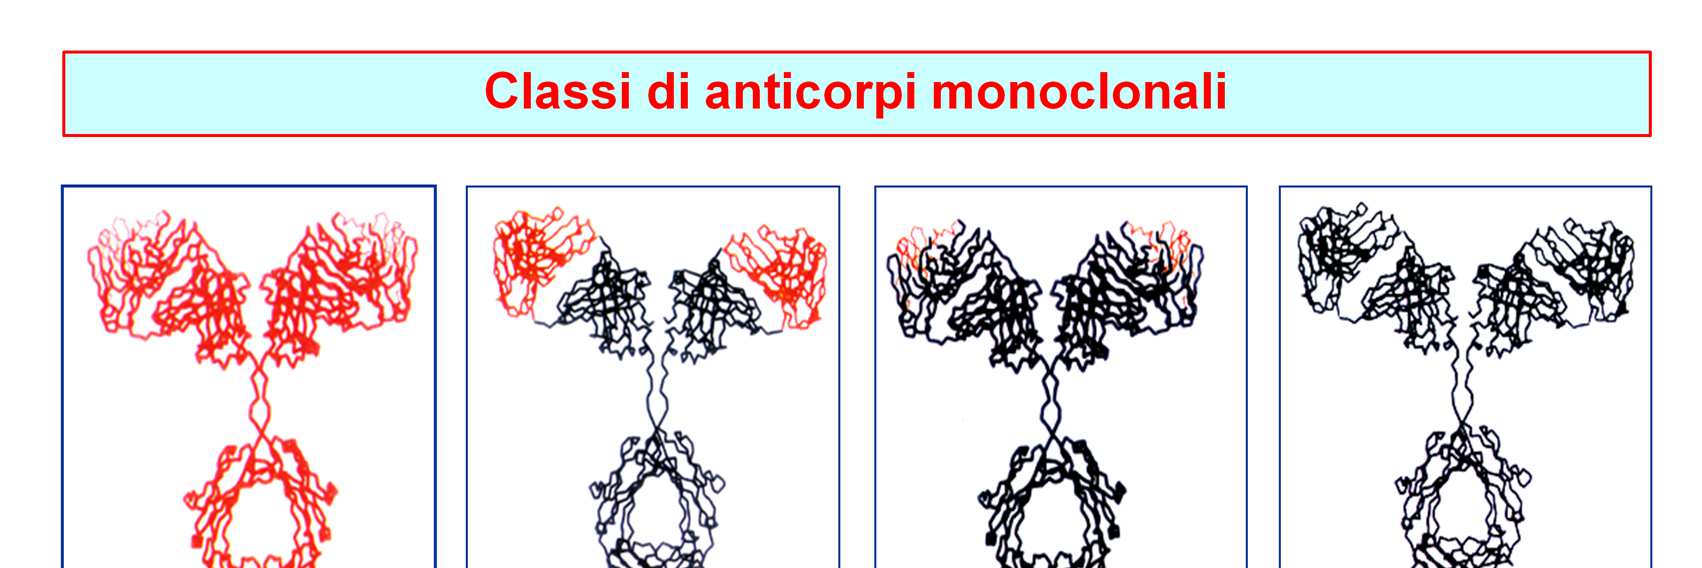 Nella figura sono rappresentati schematicamente le quattro principali classi di anticorpi monoclonali attualmente utilizzati come farmaci nell